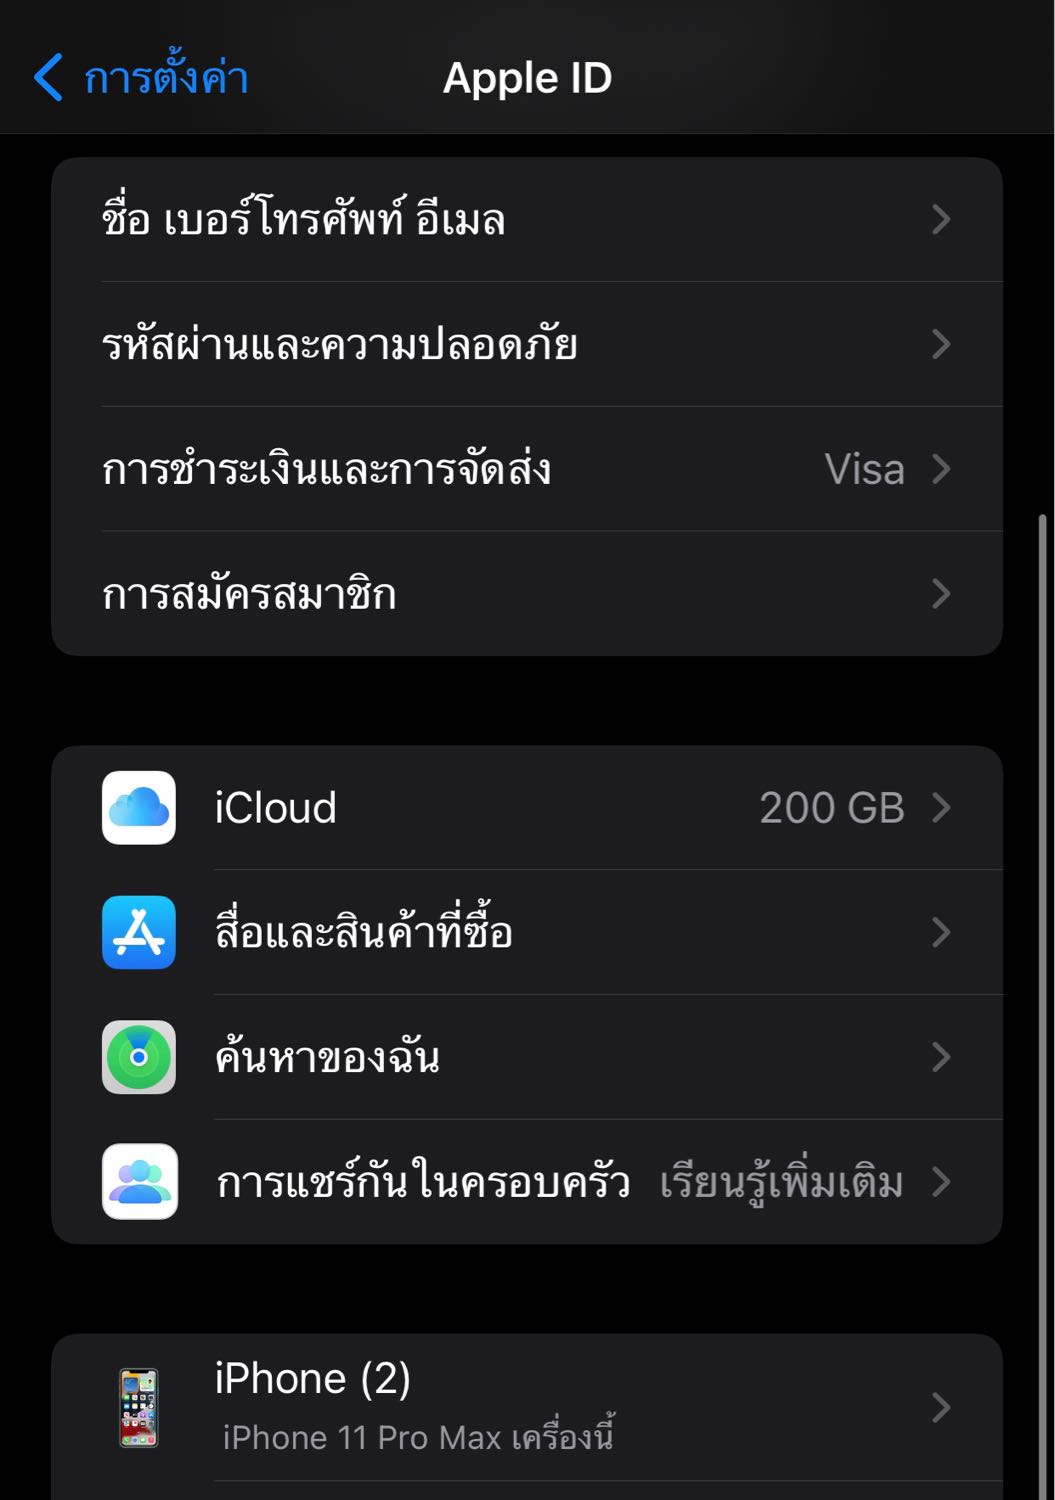 ทำไมหน้าApple Id ขึ้น Iphone(2) ครับ - Pantip